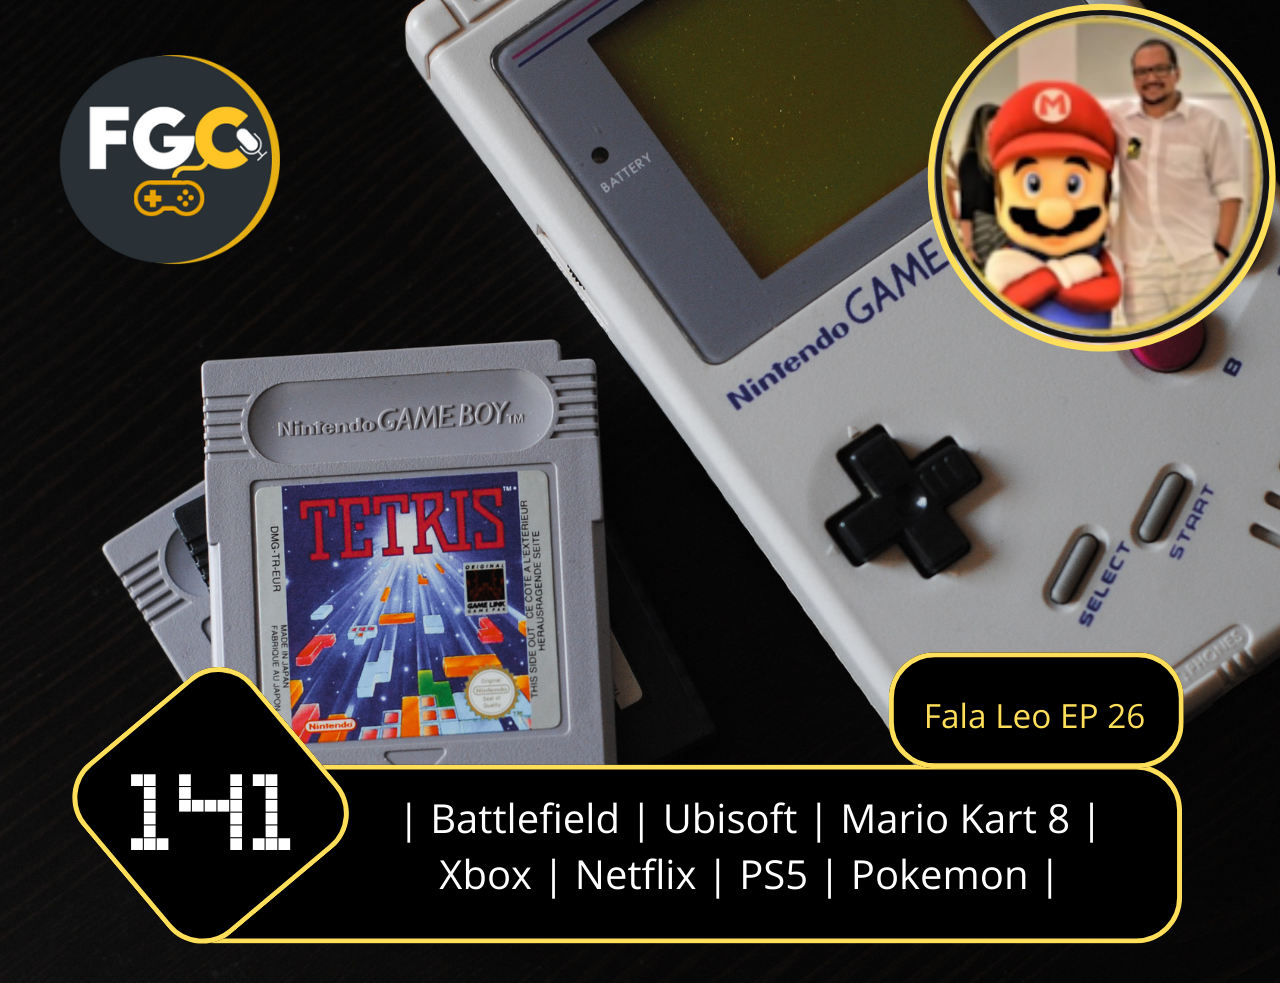 Mario Kart 8 Deluxe foi o game de mais rápida vendagem da franquia